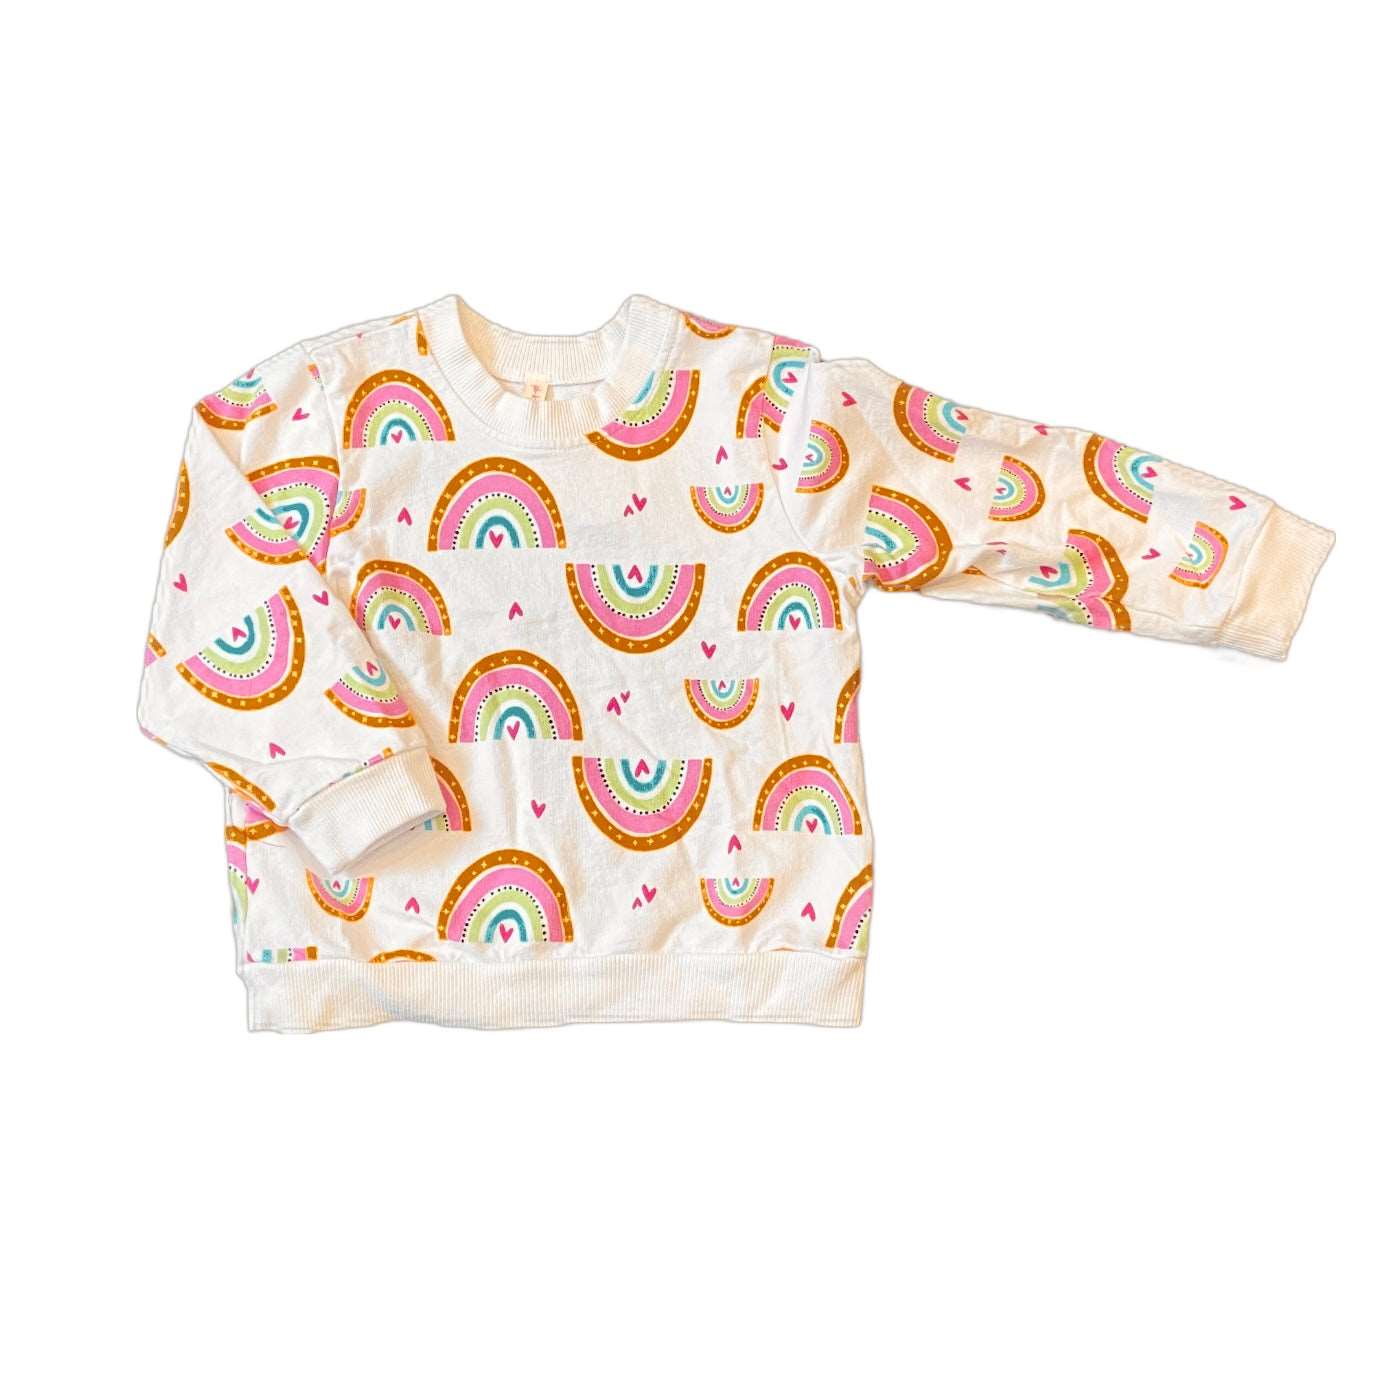 Rainbow French Terry Children's Sweatshirt